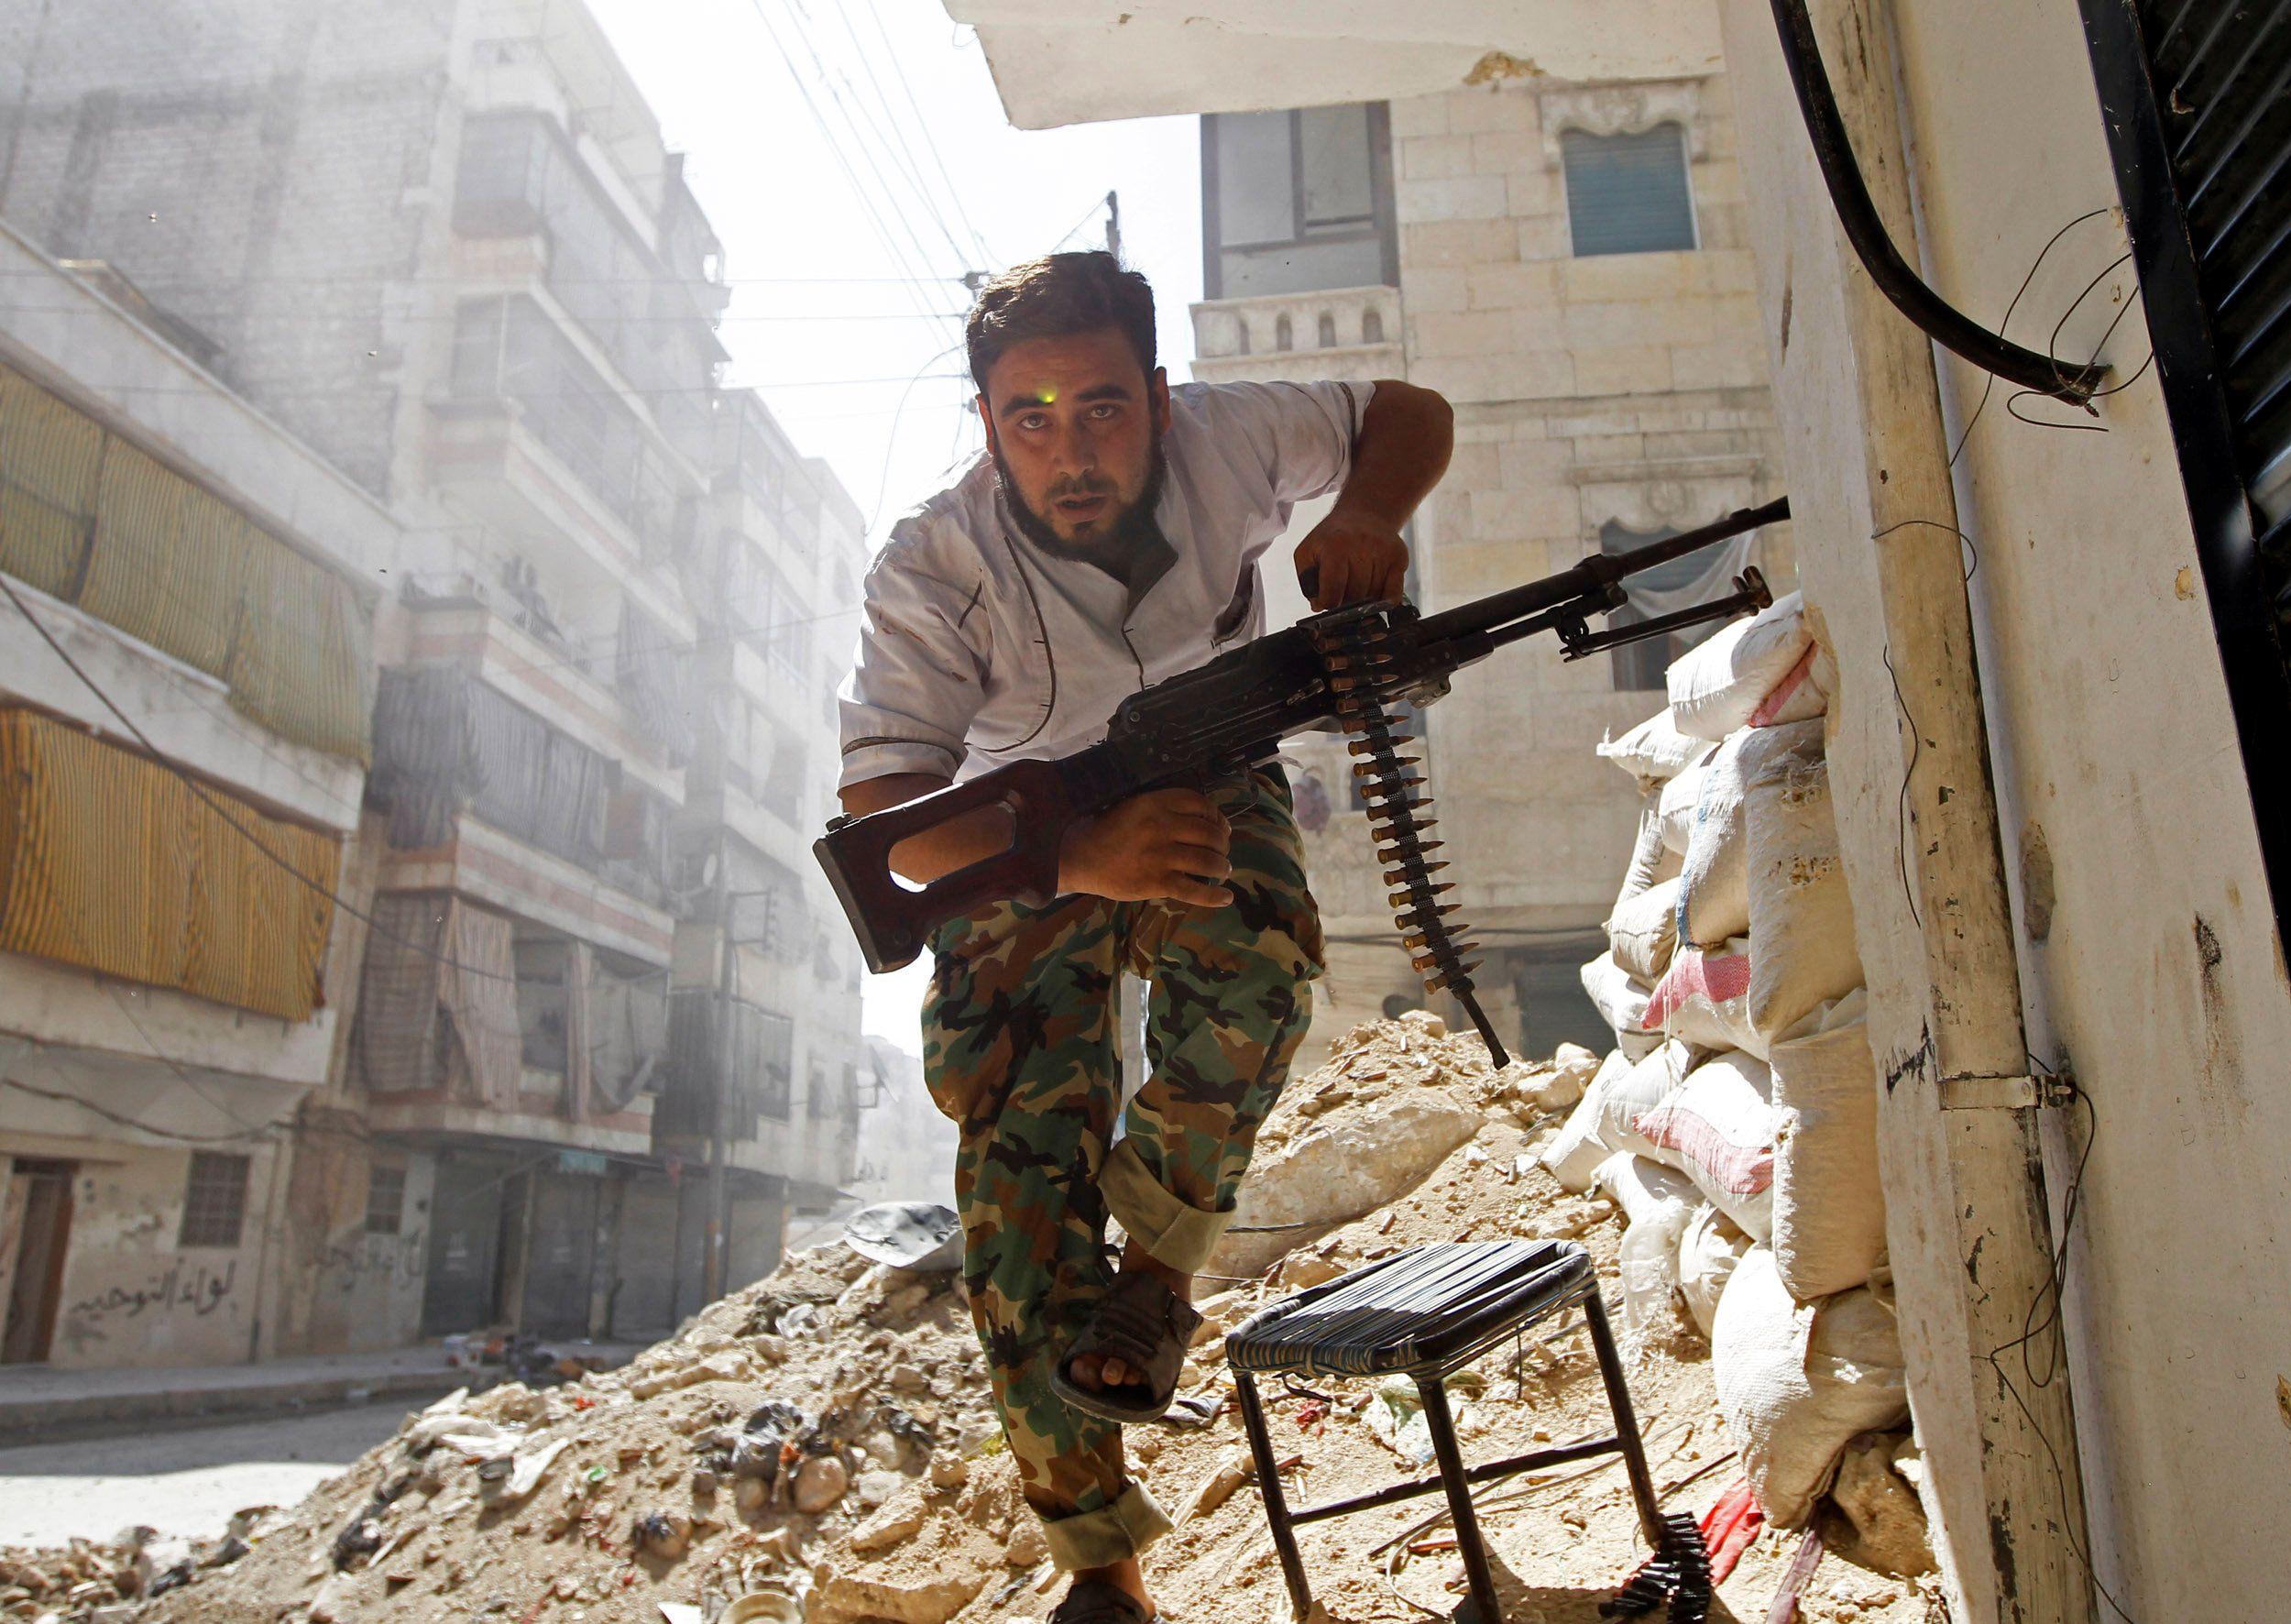 مقاتل من قوات الجيش السوري الحر يحتمي بمبنى خلال اشتباكات مع الجيش السوري في حي صلاح الدين بوسط حلب في أغسطس/آب 2012